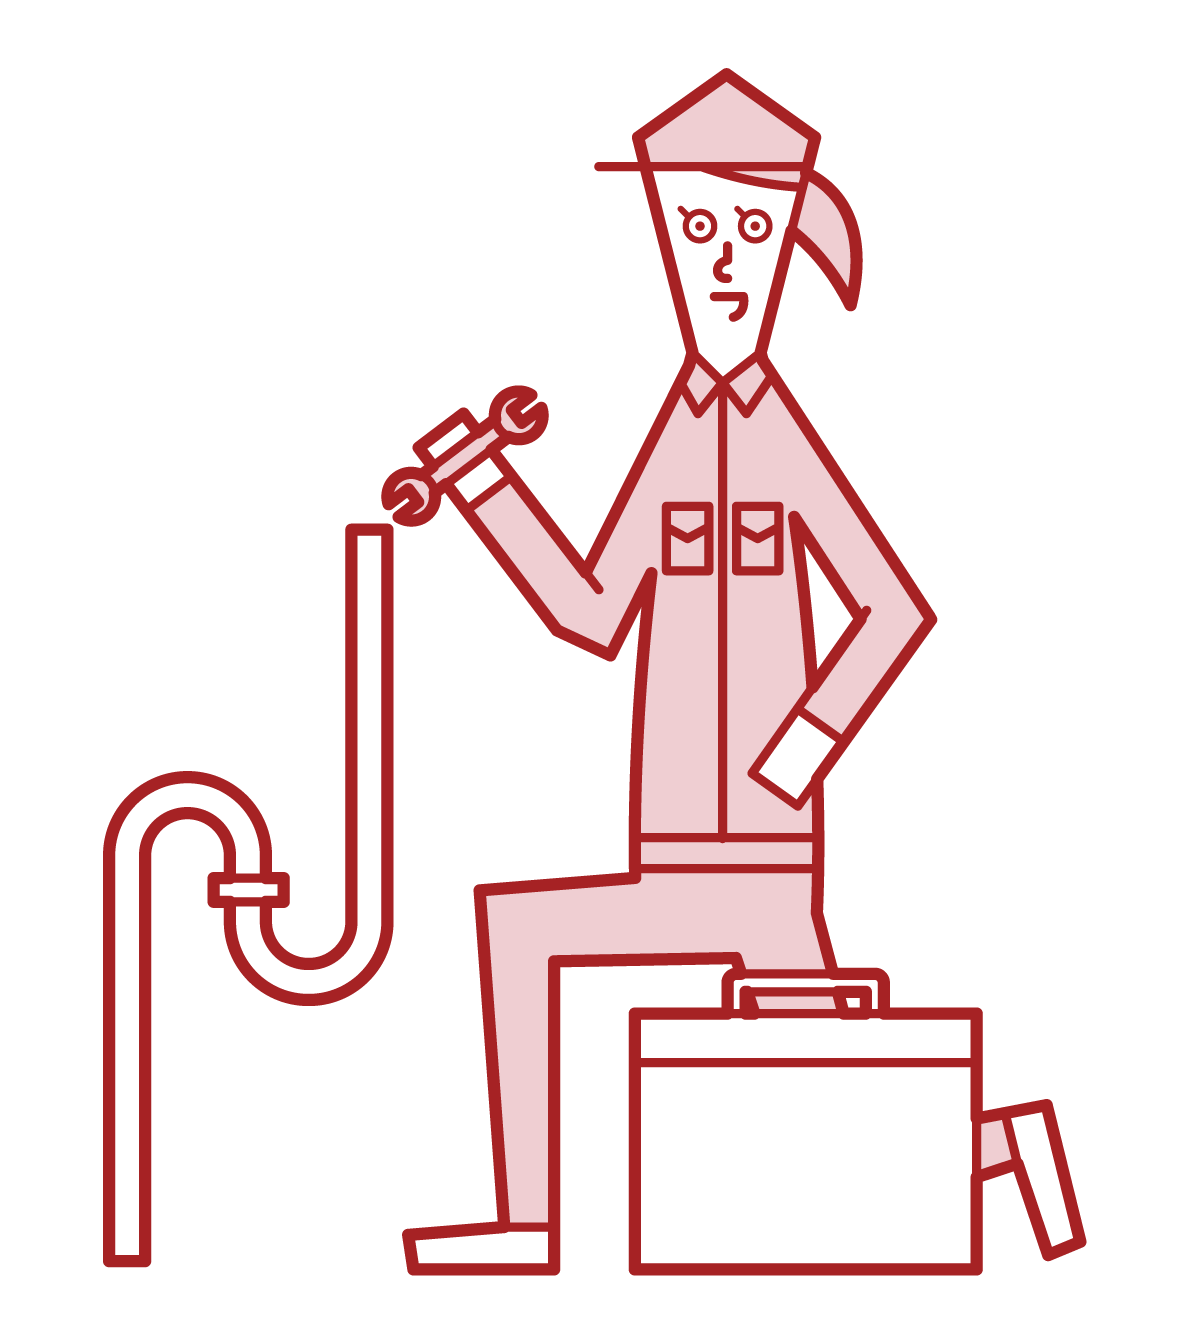 Illustration of a plumber (female)